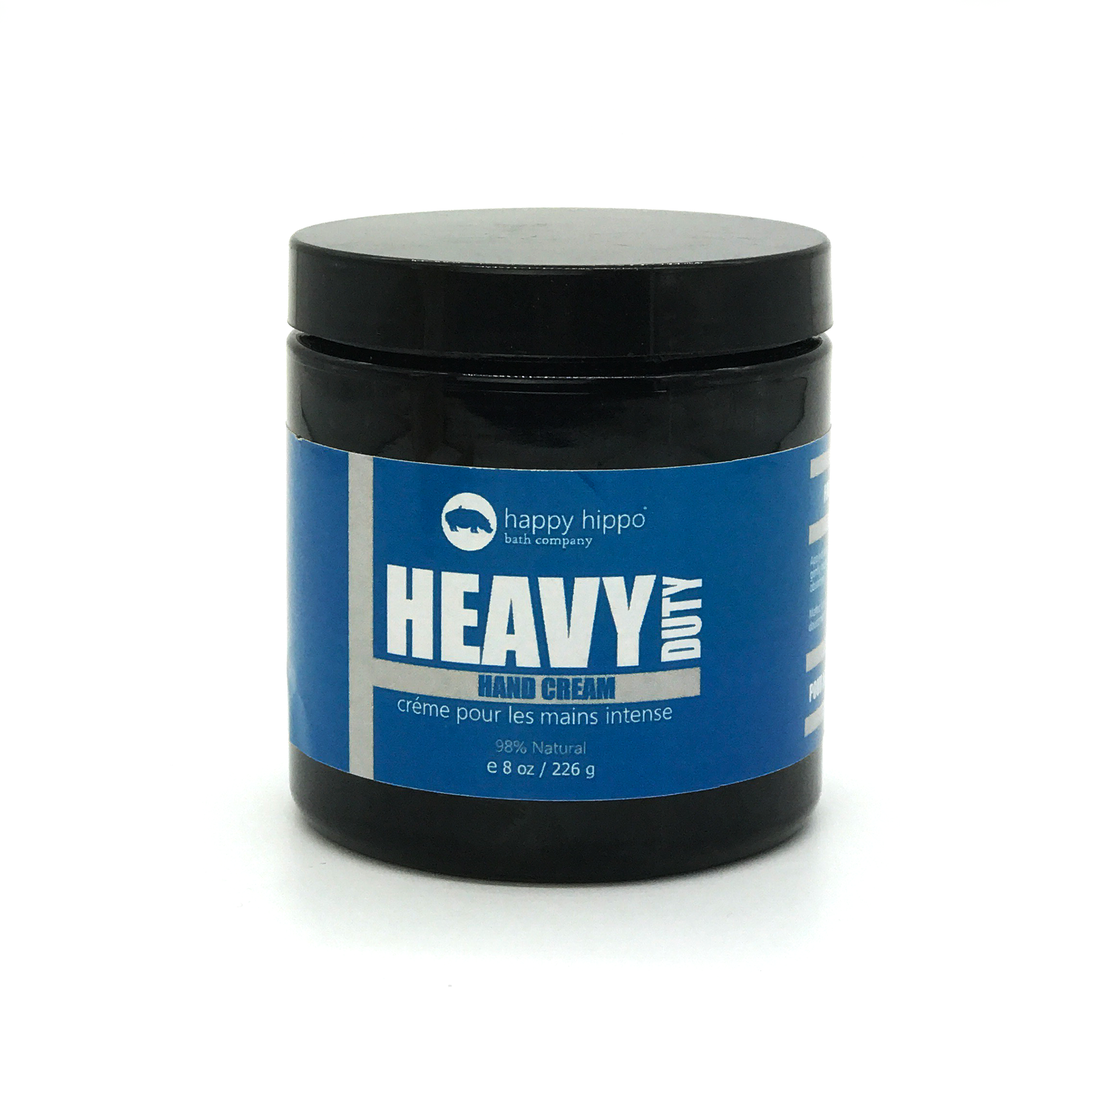 Heavy Duty Hand Cream